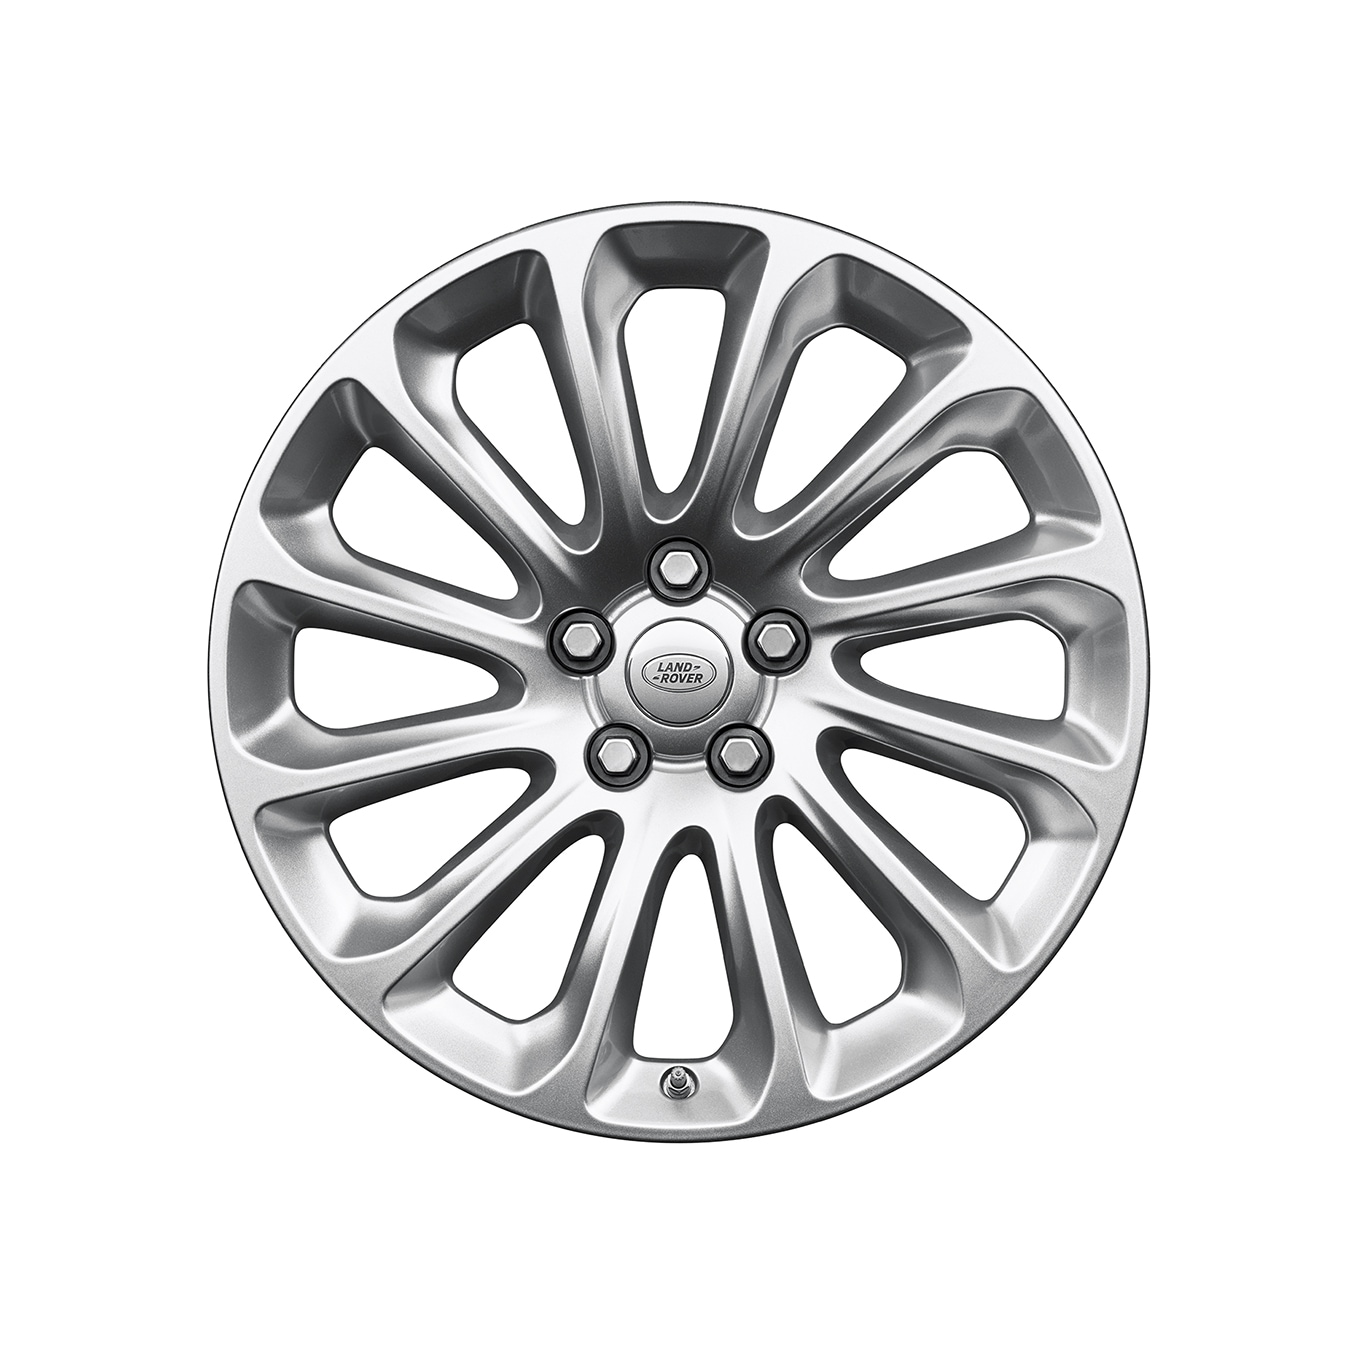 Alloy Wheel - 20” Style 1065, 12 spoke 